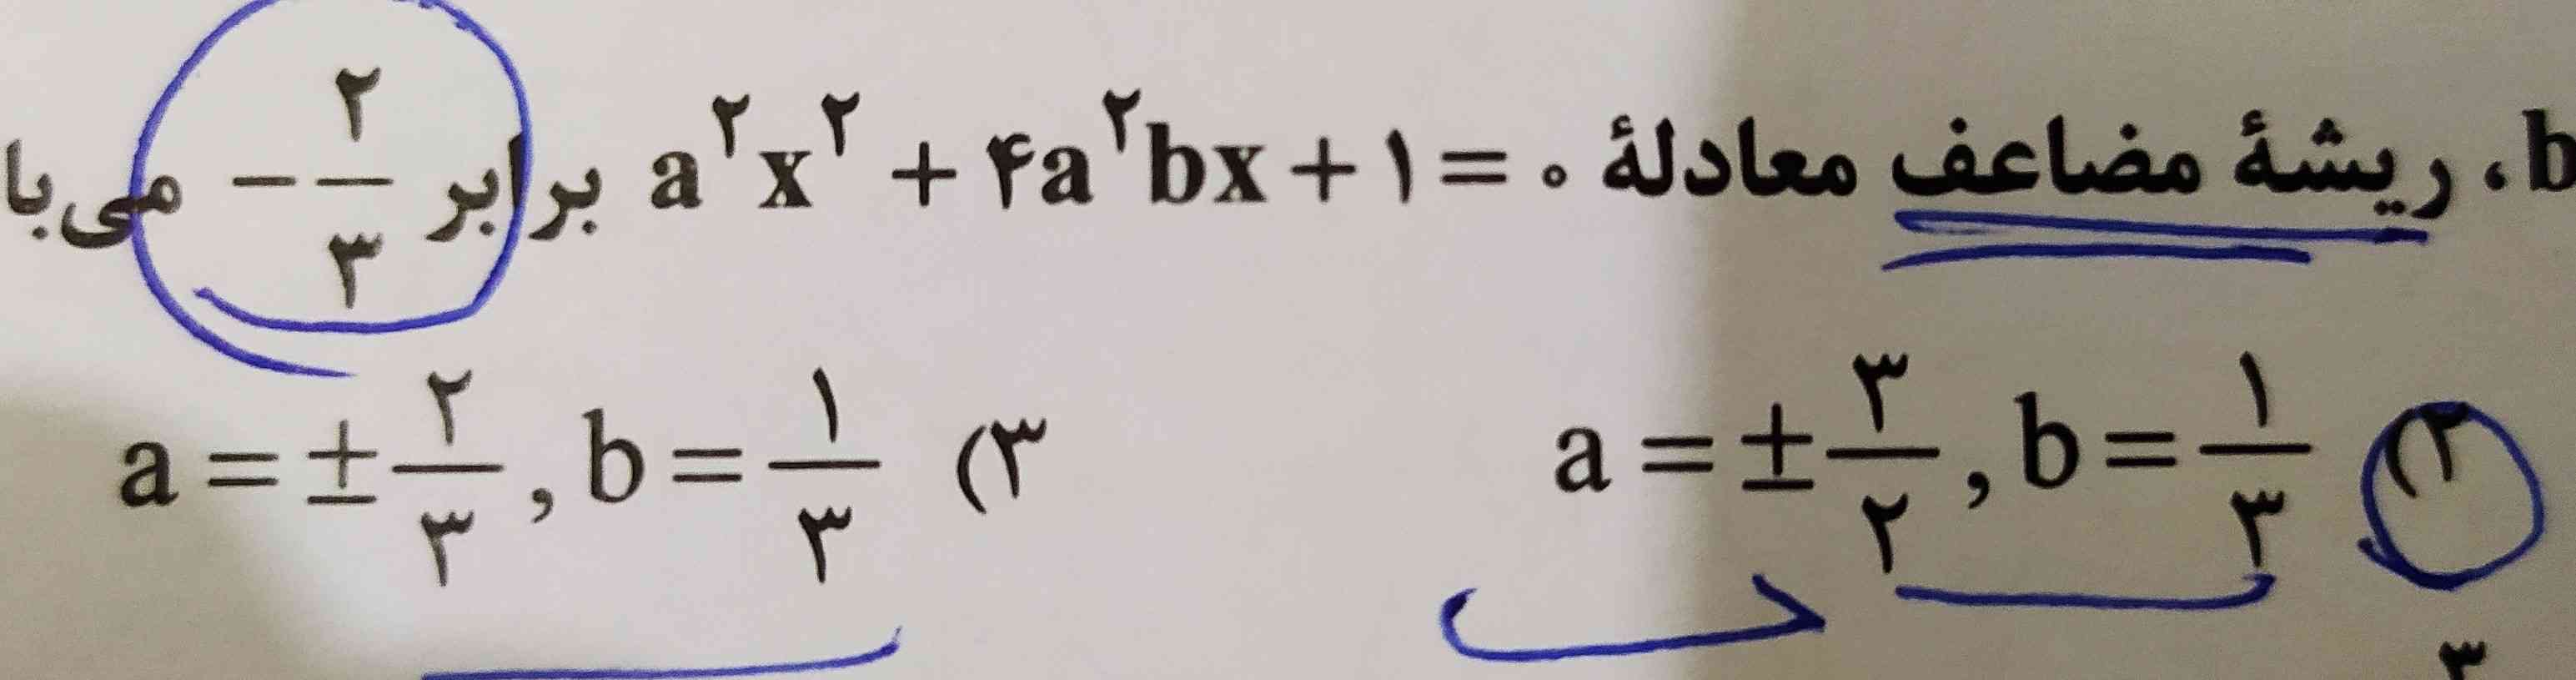 چرا  از فرمول  b- تقسیم بر 2a  👈 ( فرمول ریشه مضاعف ) فقط جواب b رو بدست آورد و a رو از فرمول تتا  ؟! و اینکه جواب a هم  کامل فرق کرد ، در حالی از همون فرمول -bتقسیم بر ۲a جفتشون حساب میشه ولی جوابا فرق میکنهه!!! چرا از یه فرمول نمیشه ؟